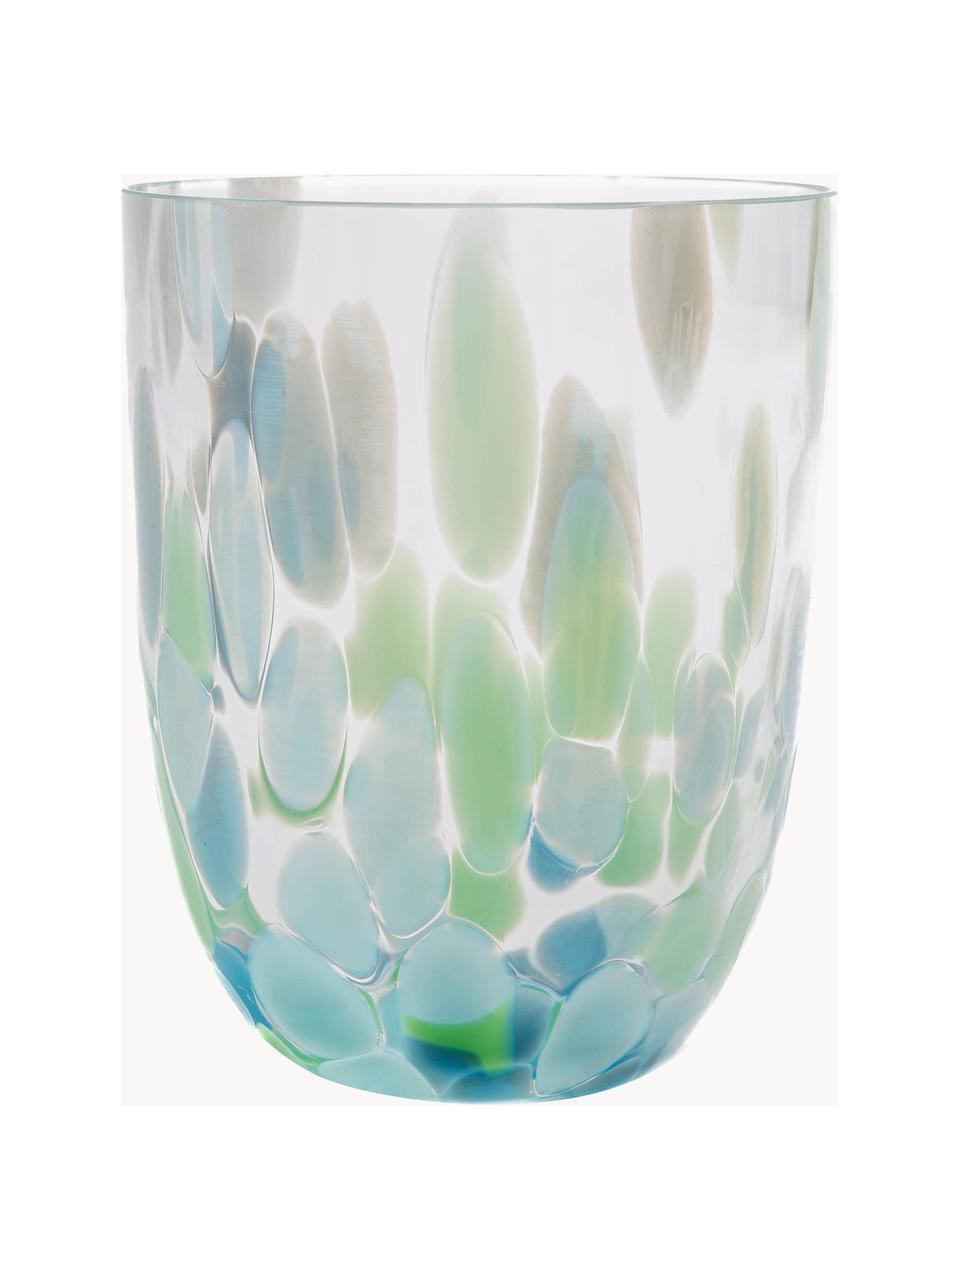 Bicchieri per acqua fatti a mano Big Confetti 6 pz, Vetro, Tonalità blu, verde menta, trasparente, Ø 7 x Alt. 10 cm, 250 ml